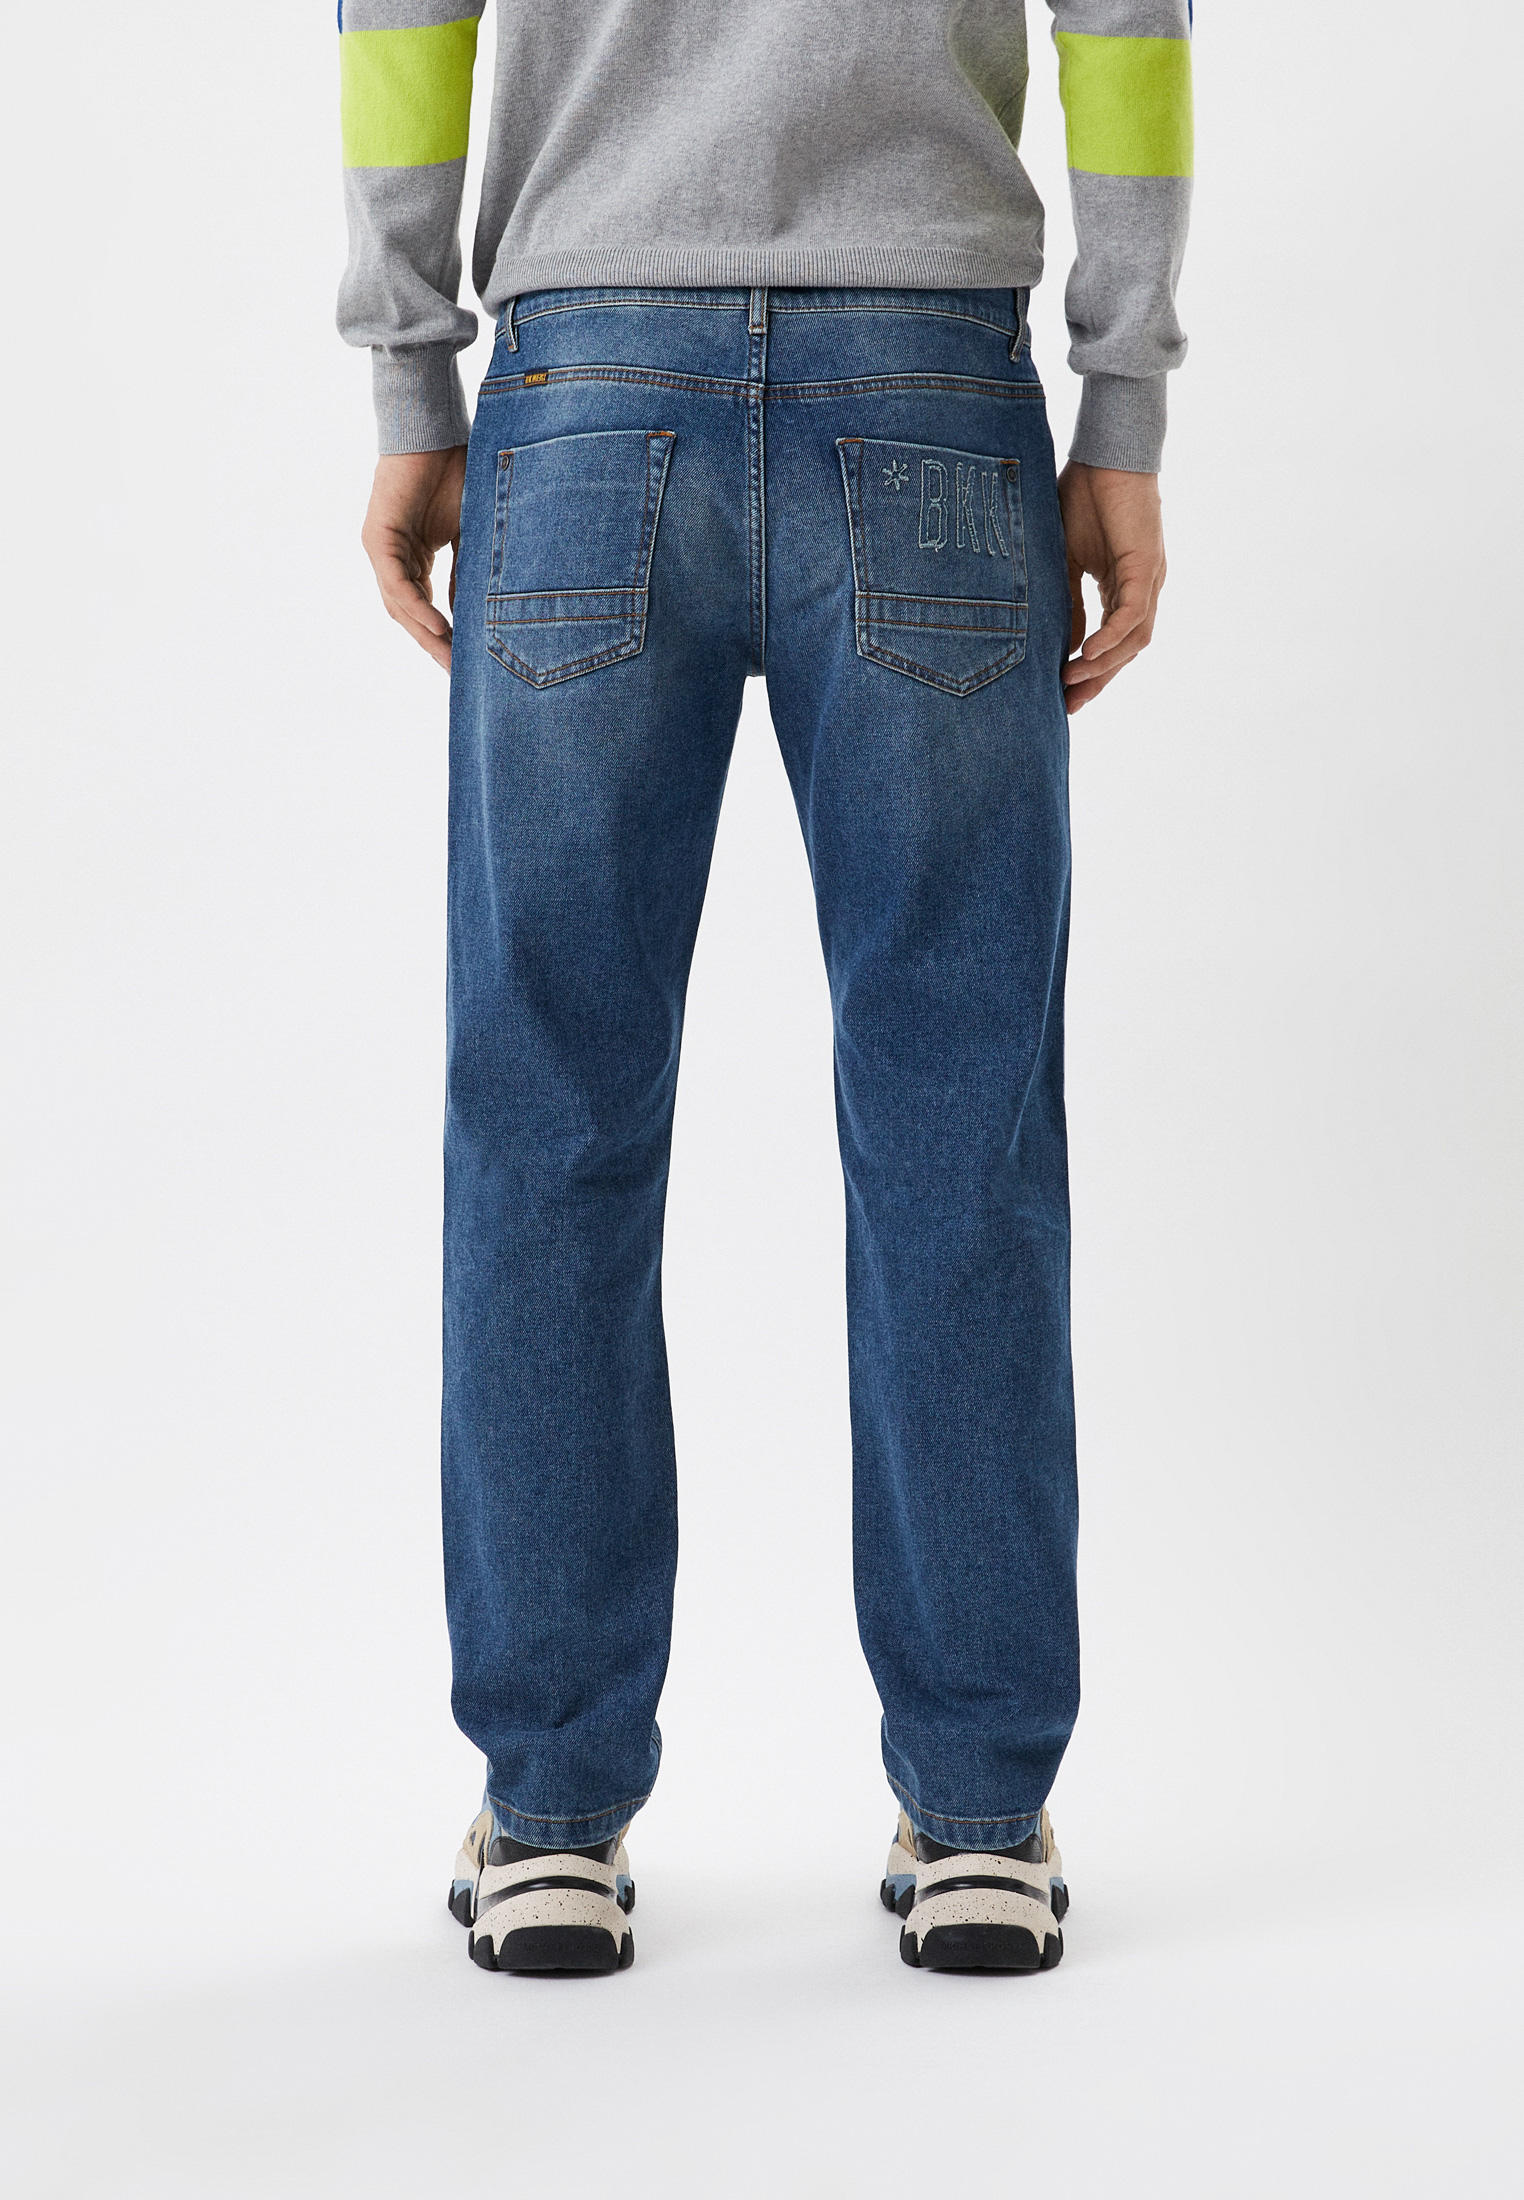 Мужские прямые джинсы Bikkembergs (Биккембергс) CQ11203S3570: изображение 3